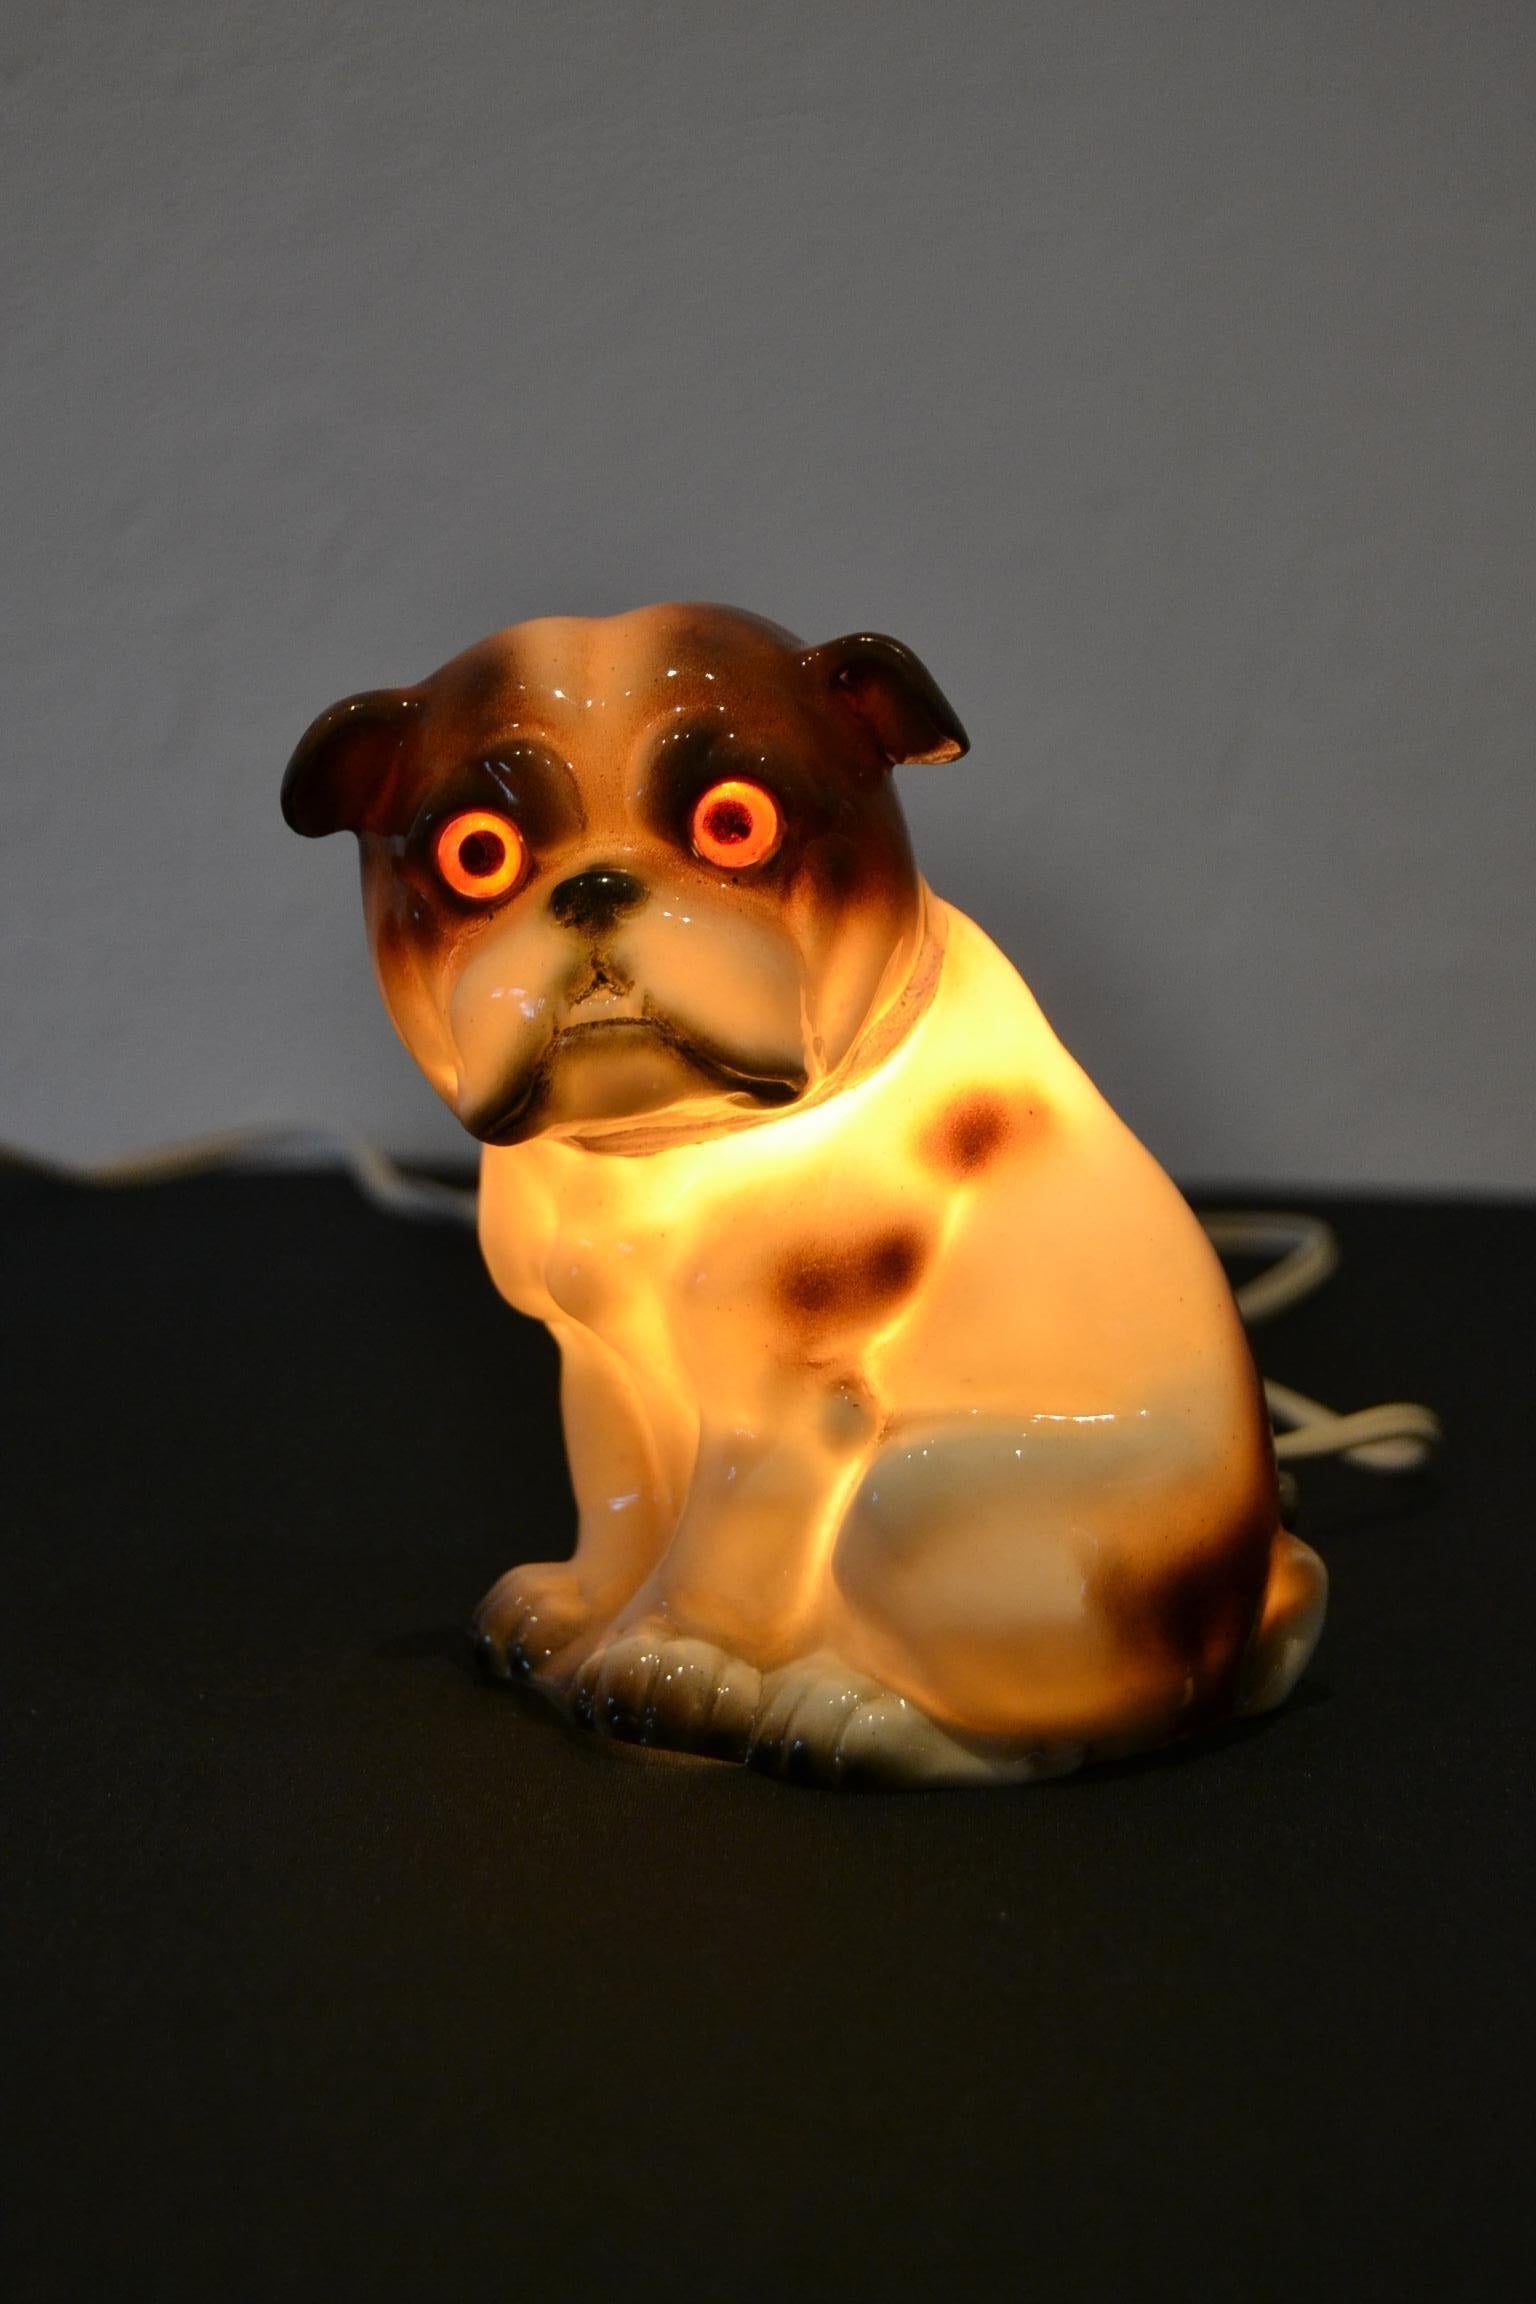 Englische Bulldogge Parfümlampe. 
Parfümlampe aus Porzellan in Form einer englischen Bulldogge. 
Er hat eine Schleife um den Hals, an der man die Löcher für das Parfümöl sehen kann. Mit der Wärme des Lichts wurde der angenehme Duft in den Raum